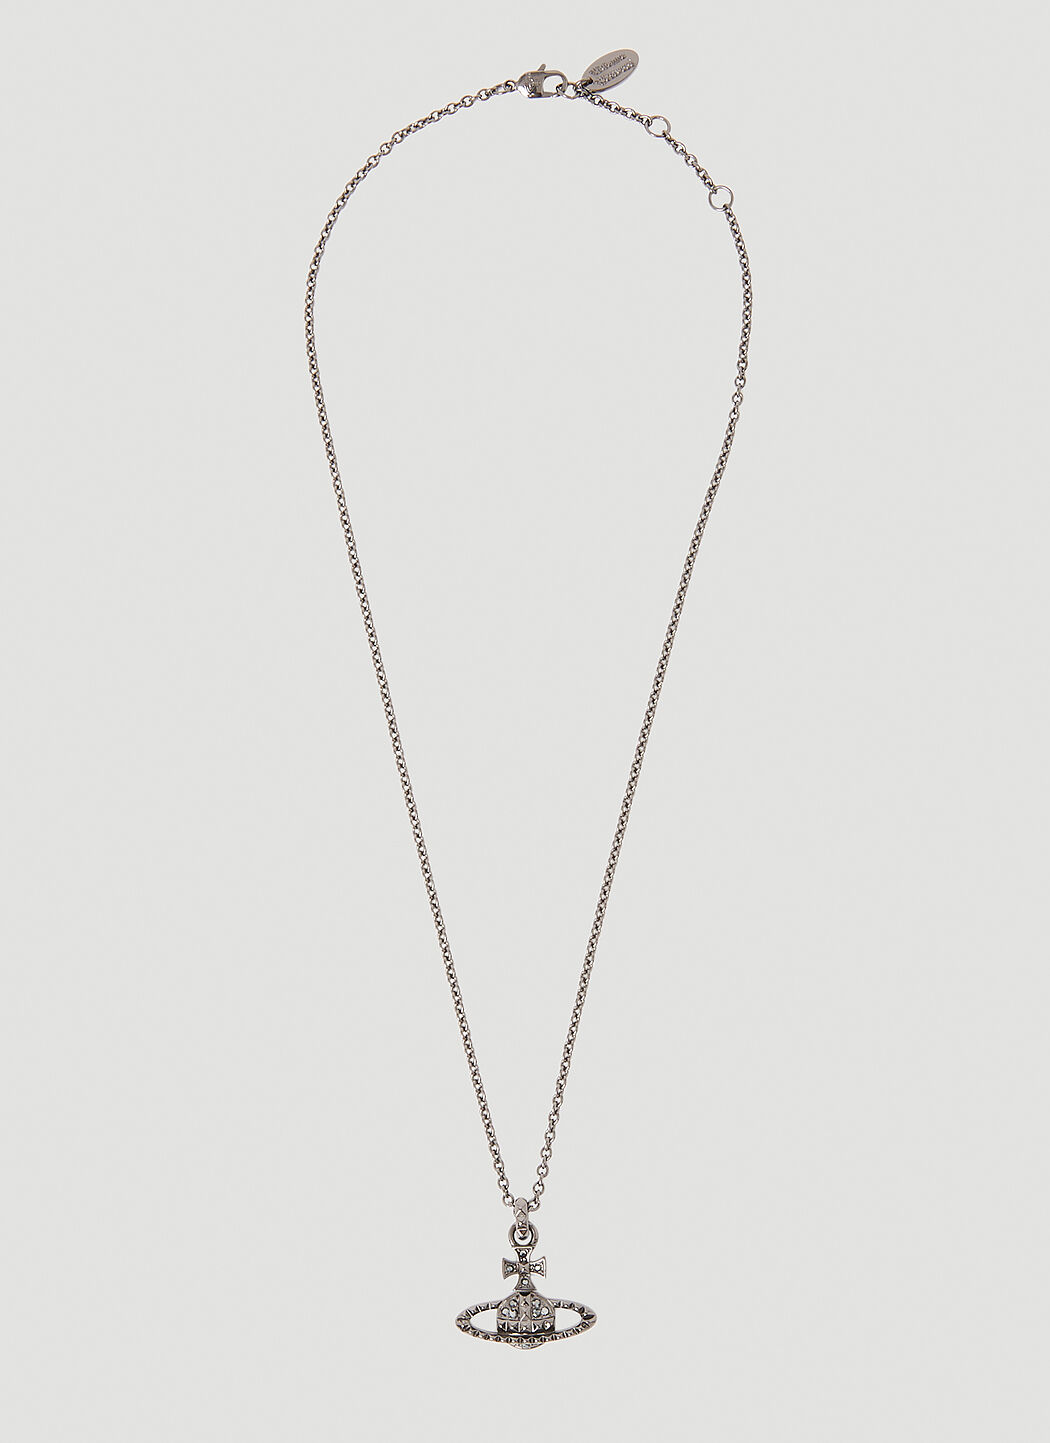 Vivienne Westwood Mayfair Bas Relief pendant necklace | Shop necklaces, Vivienne  westwood, Pendant